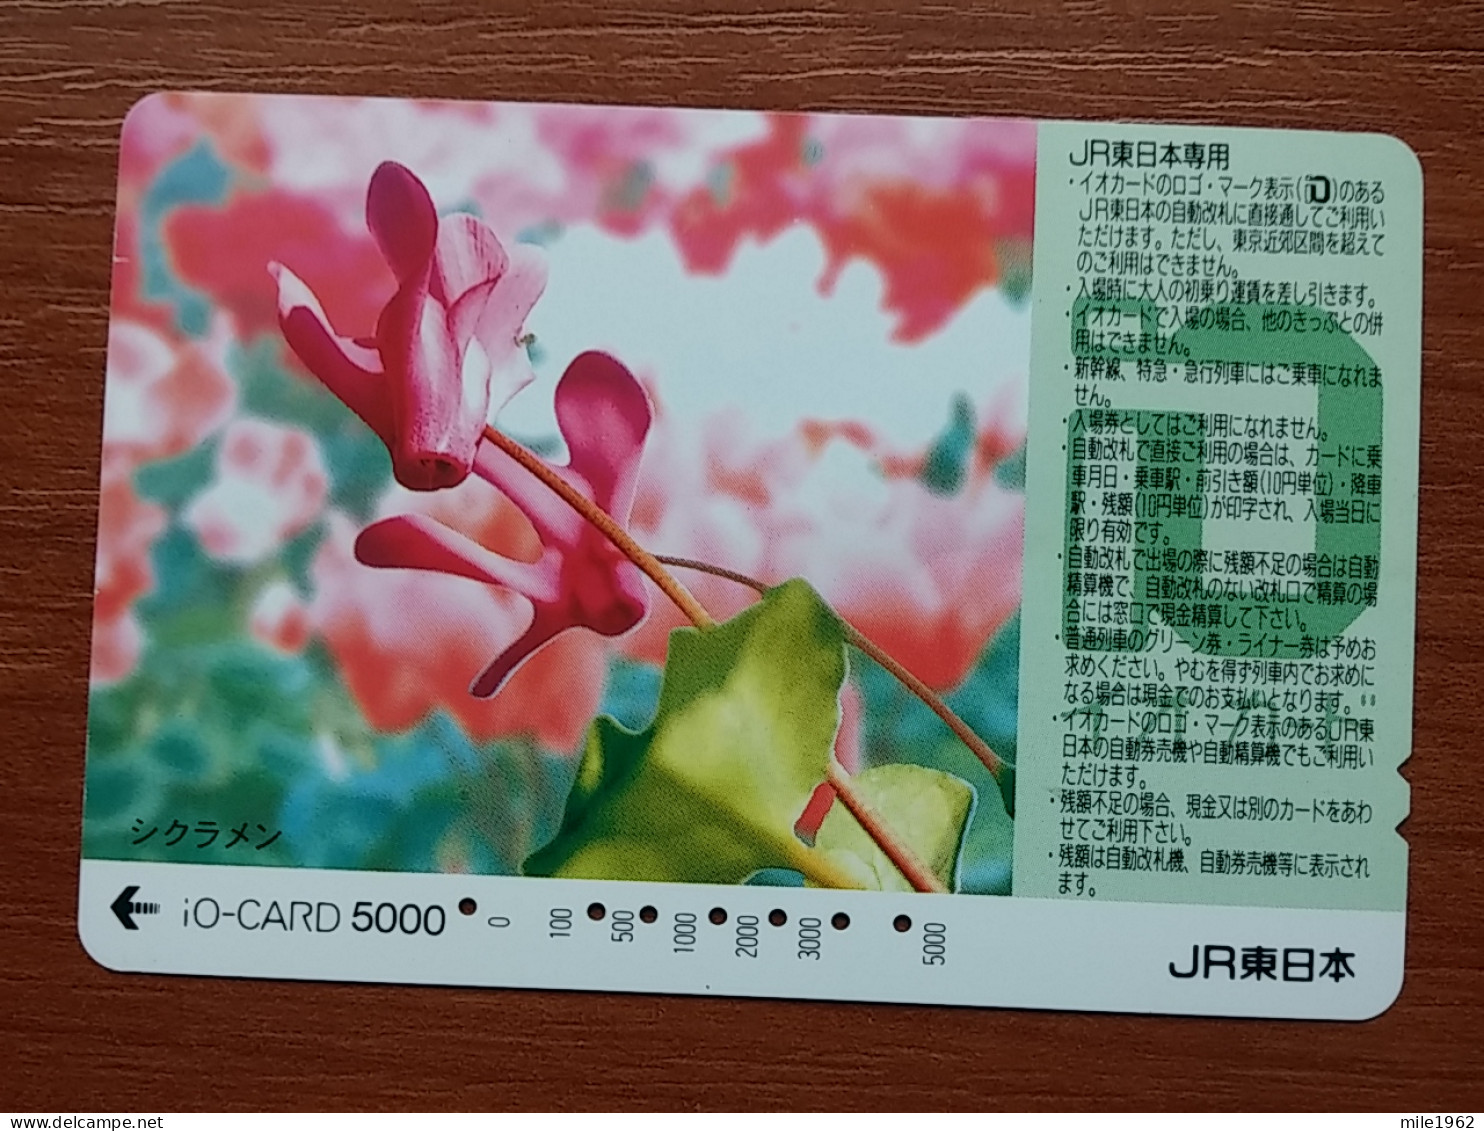 T-446 - JAPAN, Japon, Nipon, Carte Prepayee, Prepaid Card, FLOWER, FLEUR - Flowers